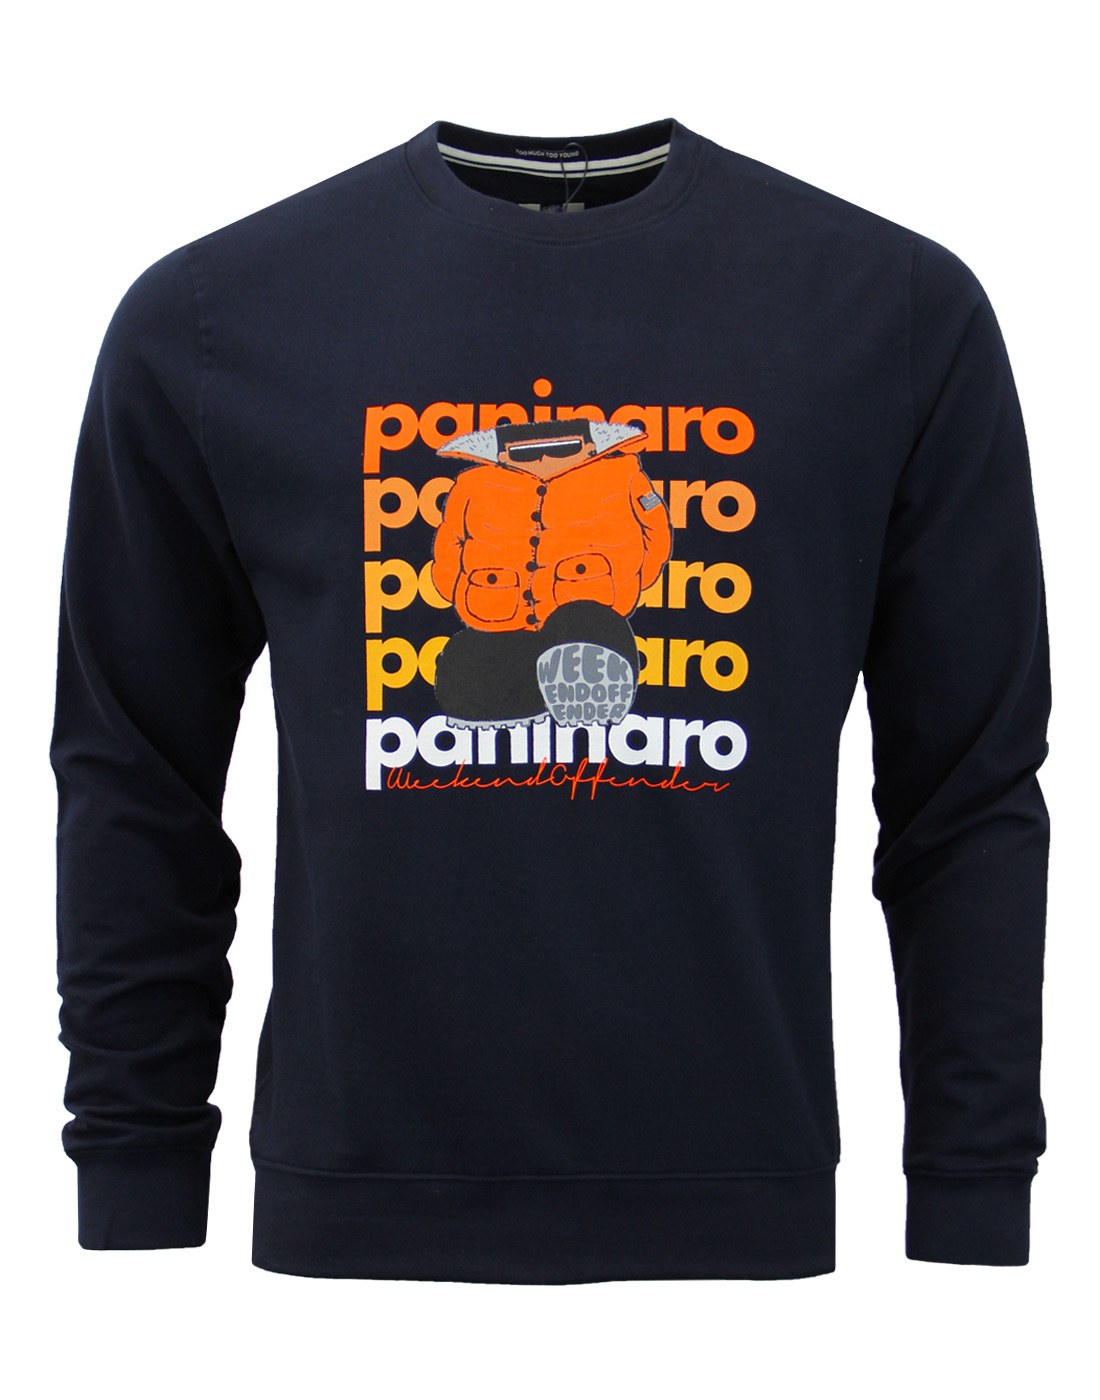 Paninaro WEEKEND OFFENDER Retro Casuals Sweatshirt